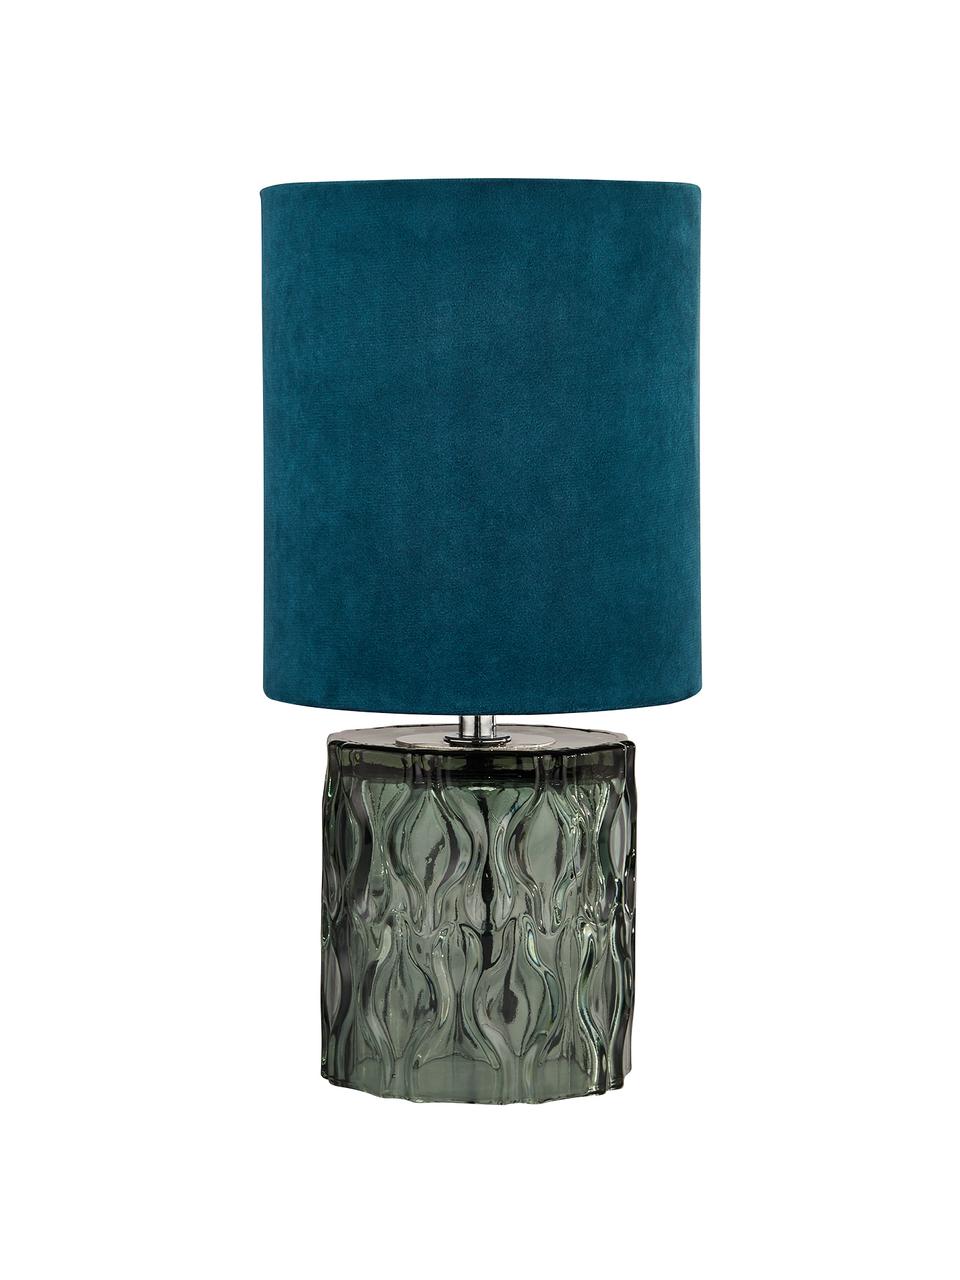 Kleine fluwelen tafellamp Tina in blauw-groen, Lampenkap: fluweel, Lampvoet: glas, Decoratie: gegalvaniseerd metaal, Groen, Ø 15  x H 30 cm